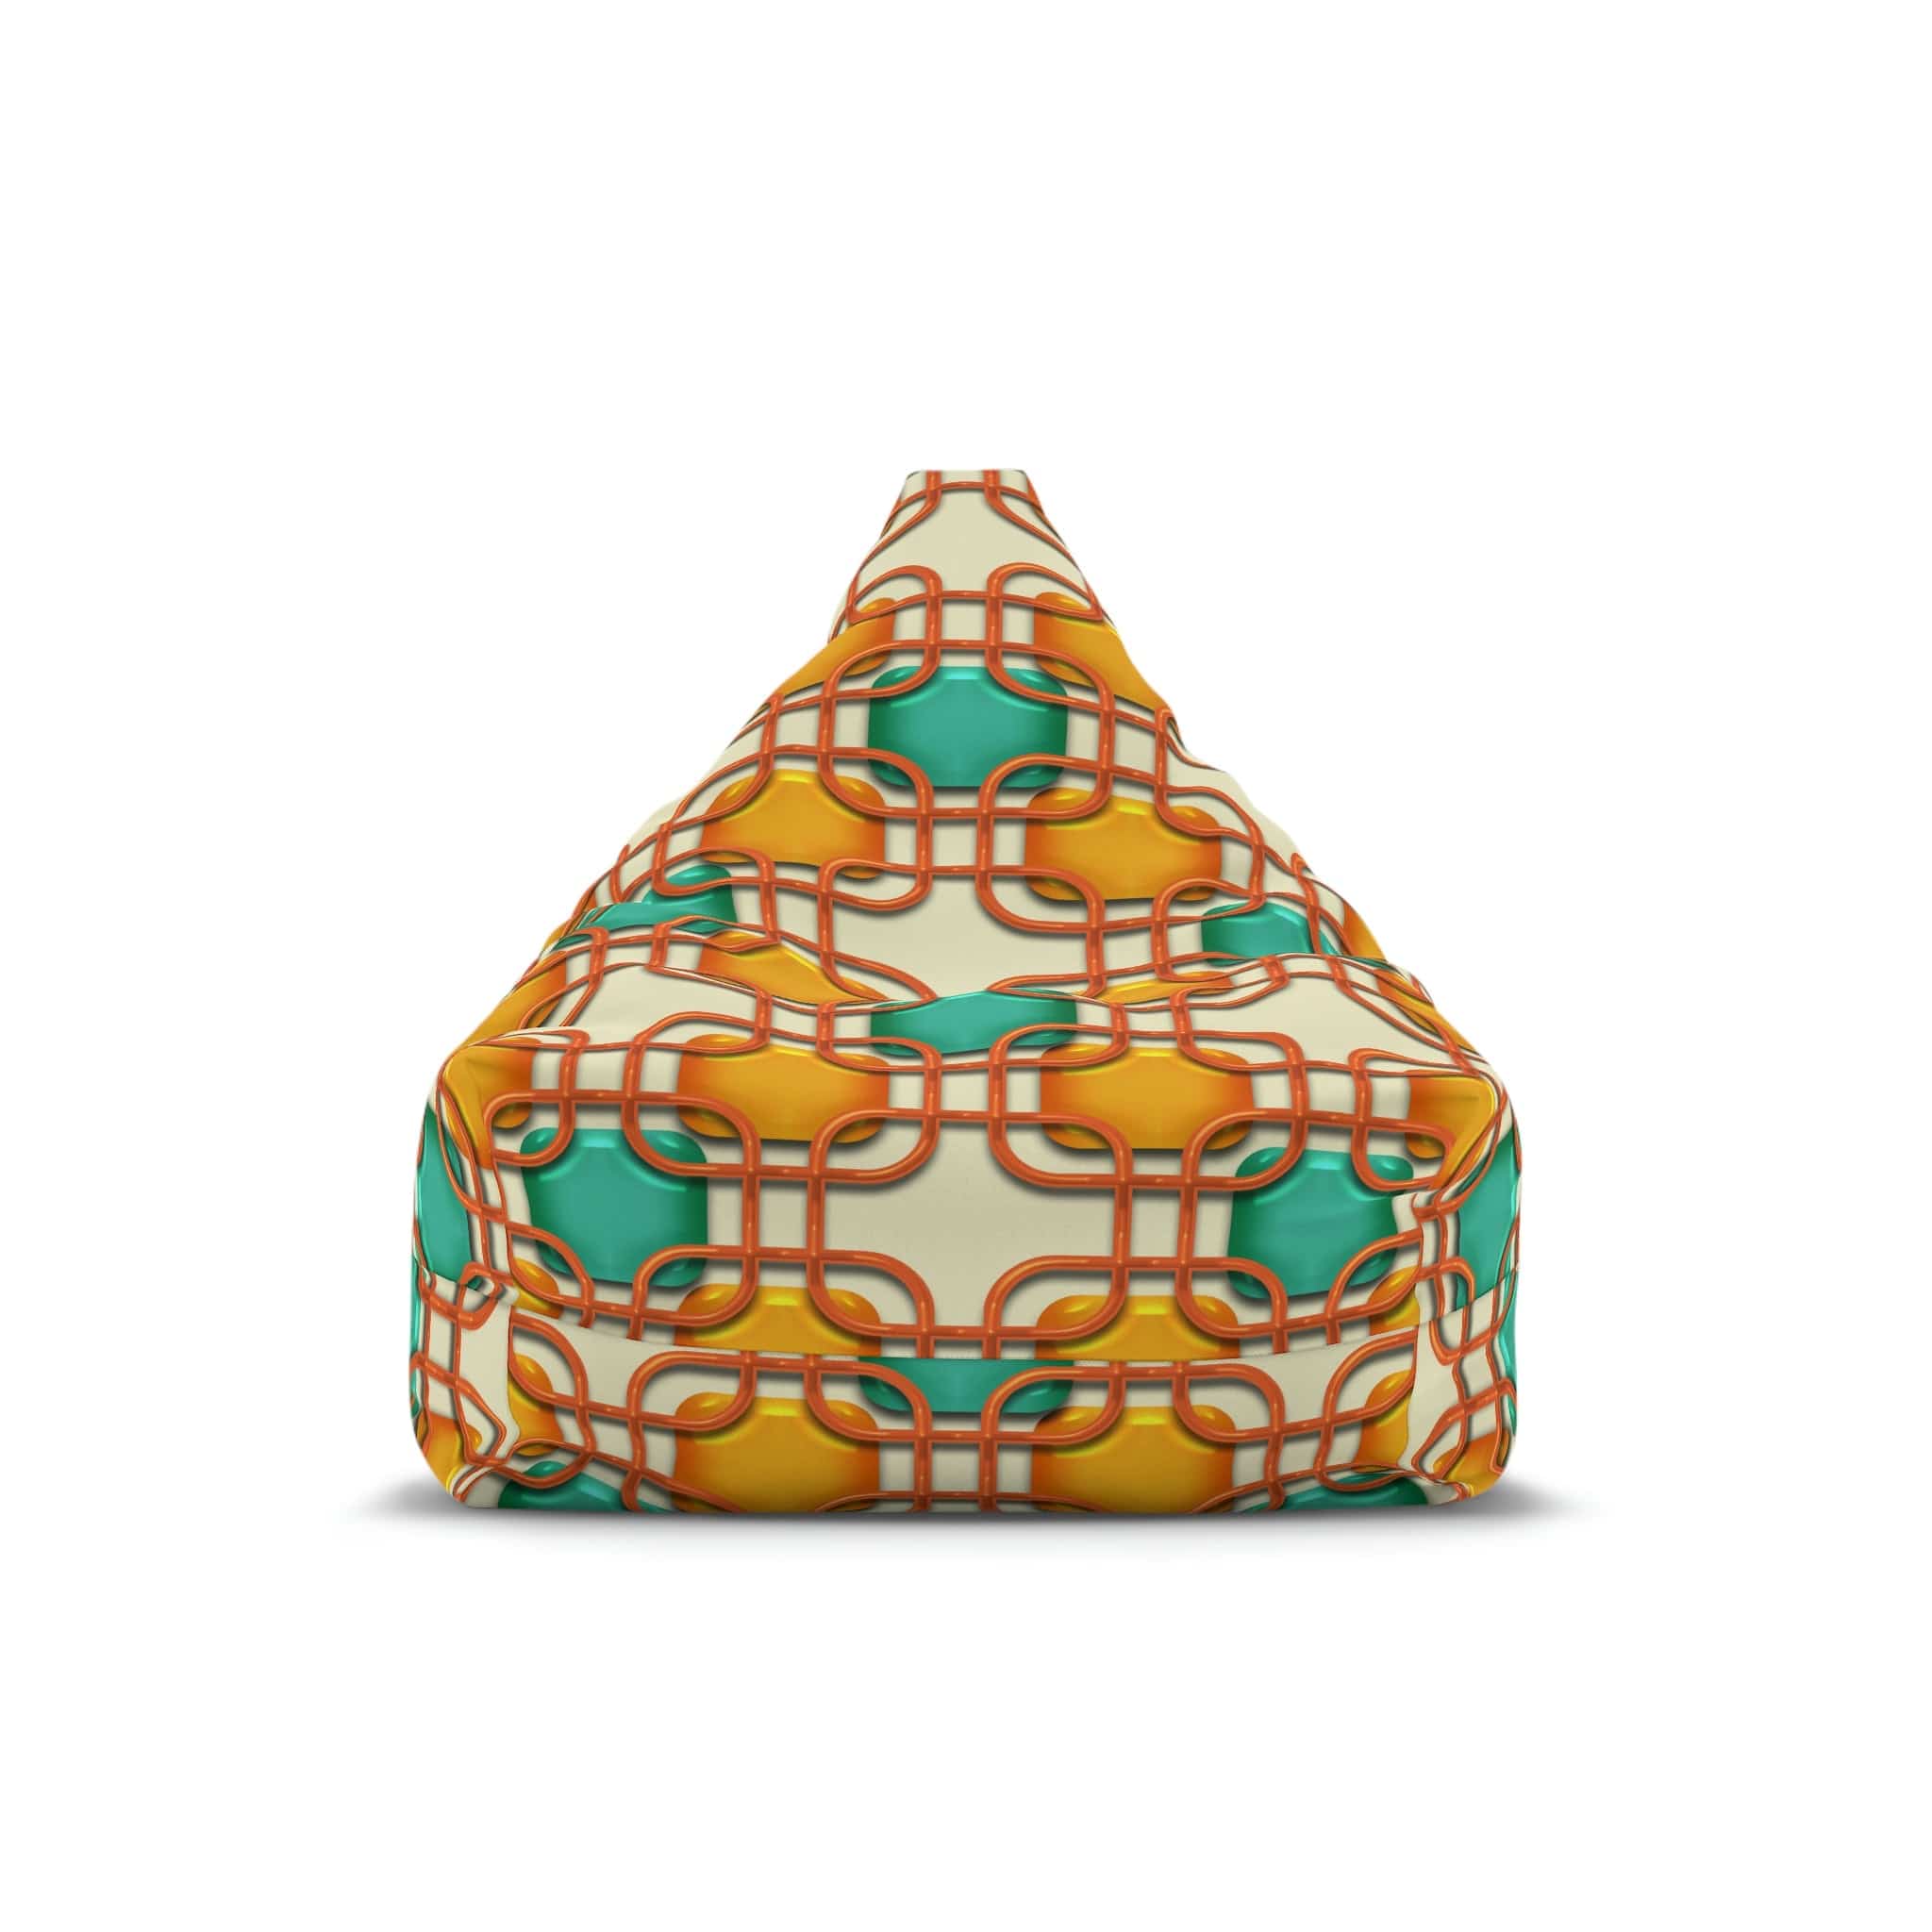 Kate McEnroe New York Retro 50s Mid Mod Geometric Bean Bag Chair CoverBean Bag Chair Covers18788987074268371807